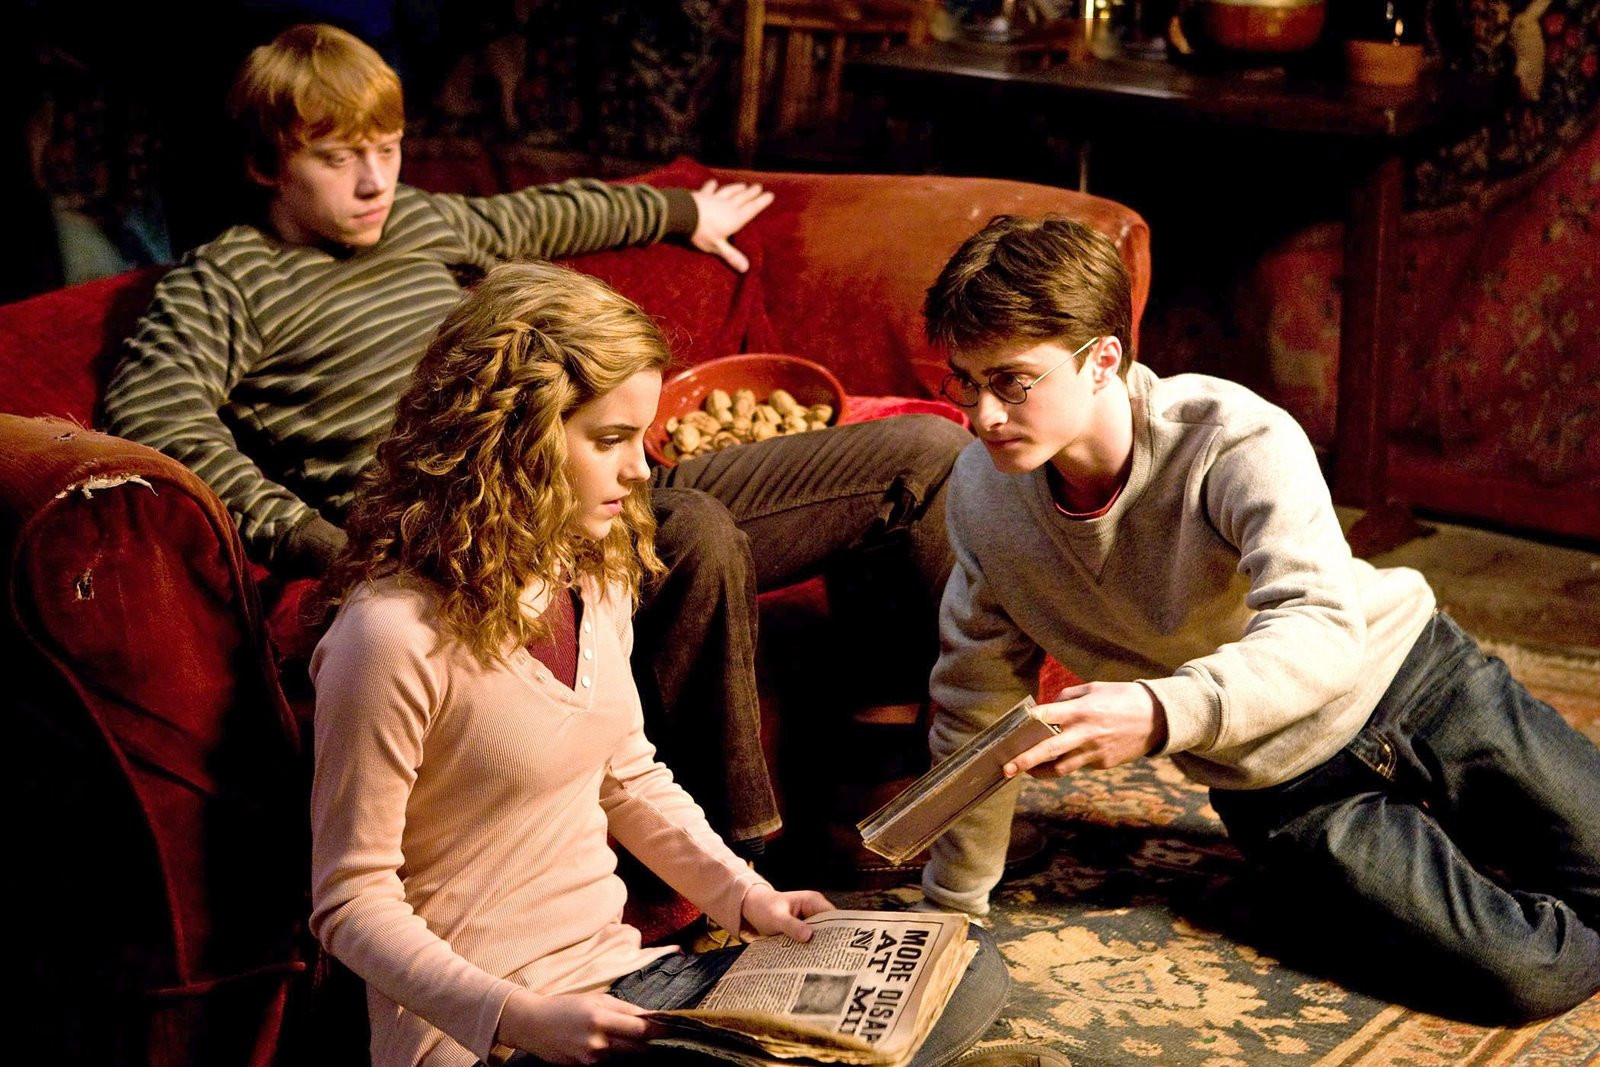 Segunda crítica de 'Harry Potter e o Enigma do Príncipe' divulgada